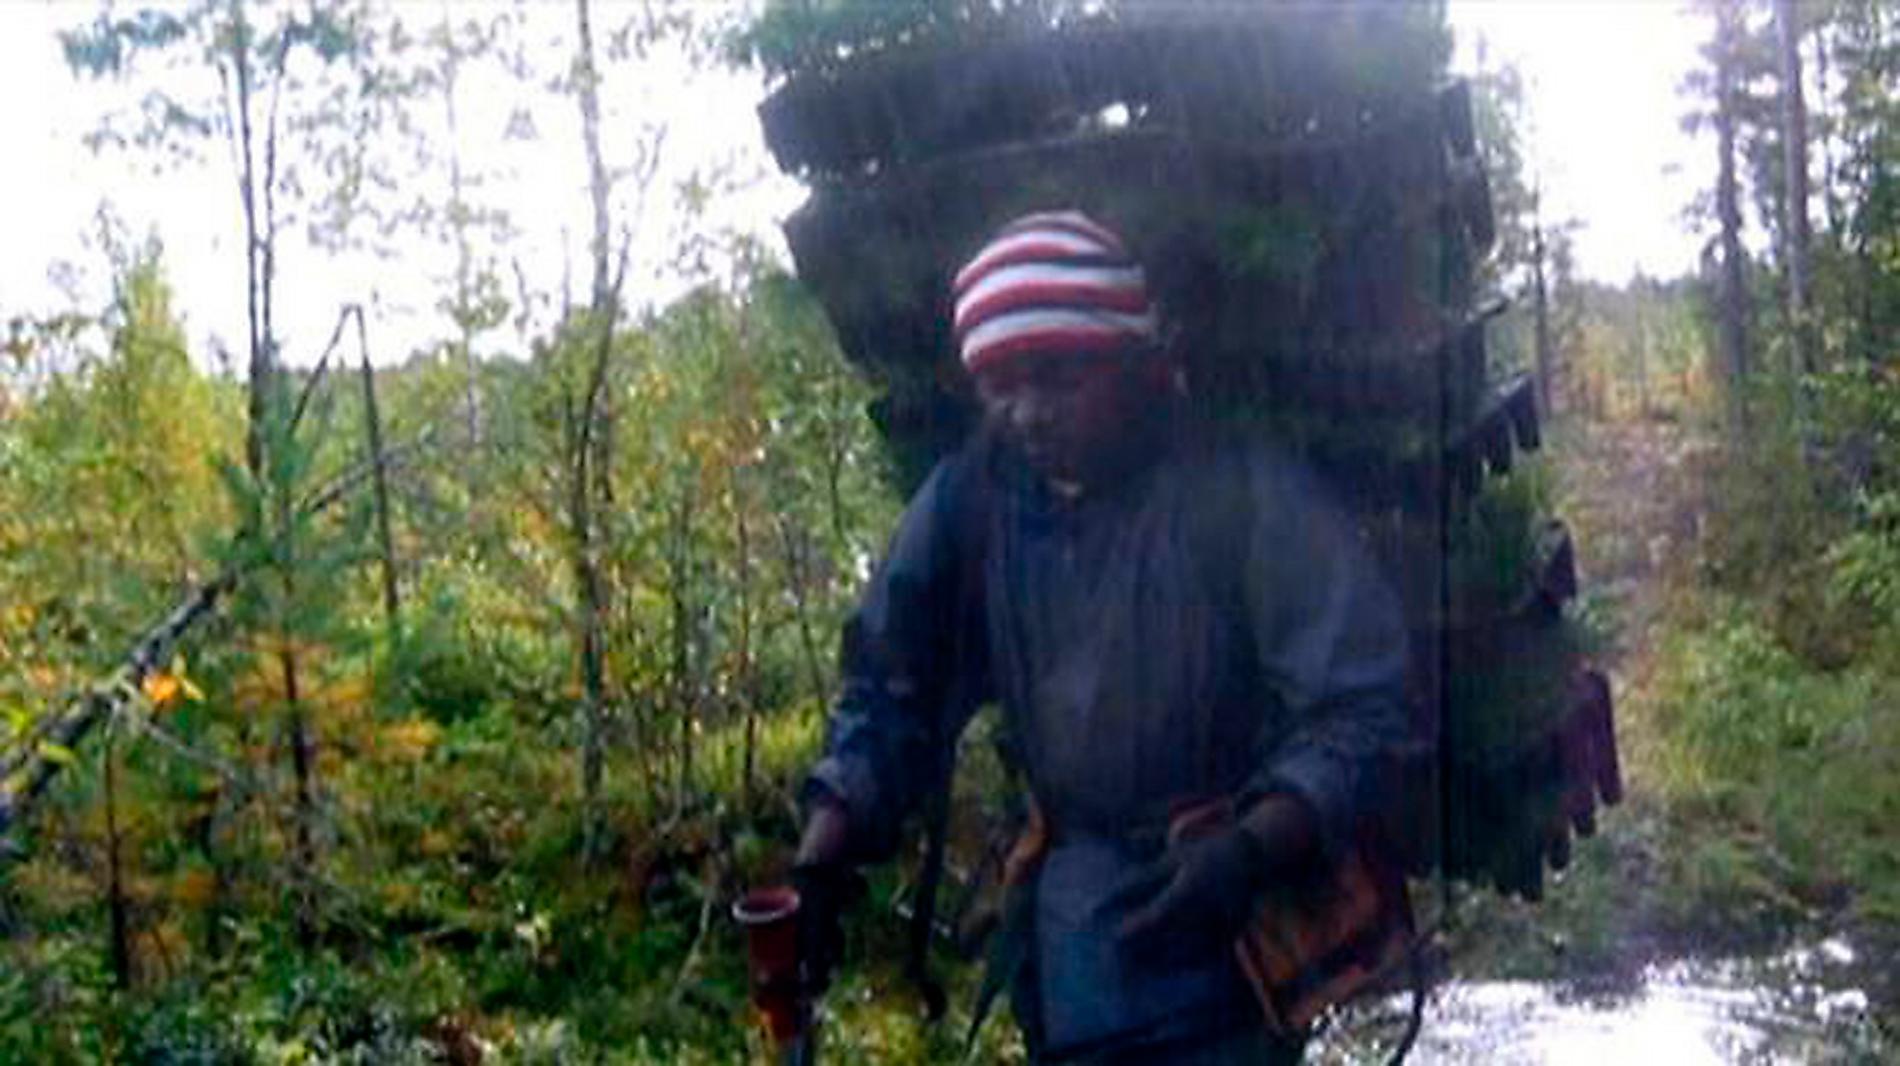 När Uppdrag granskning avslöjade att kamerunskaskogsarbetare skinnades av sina svenska arbetsgivare blev de en symbol för hur maktlösa människor exploateras.